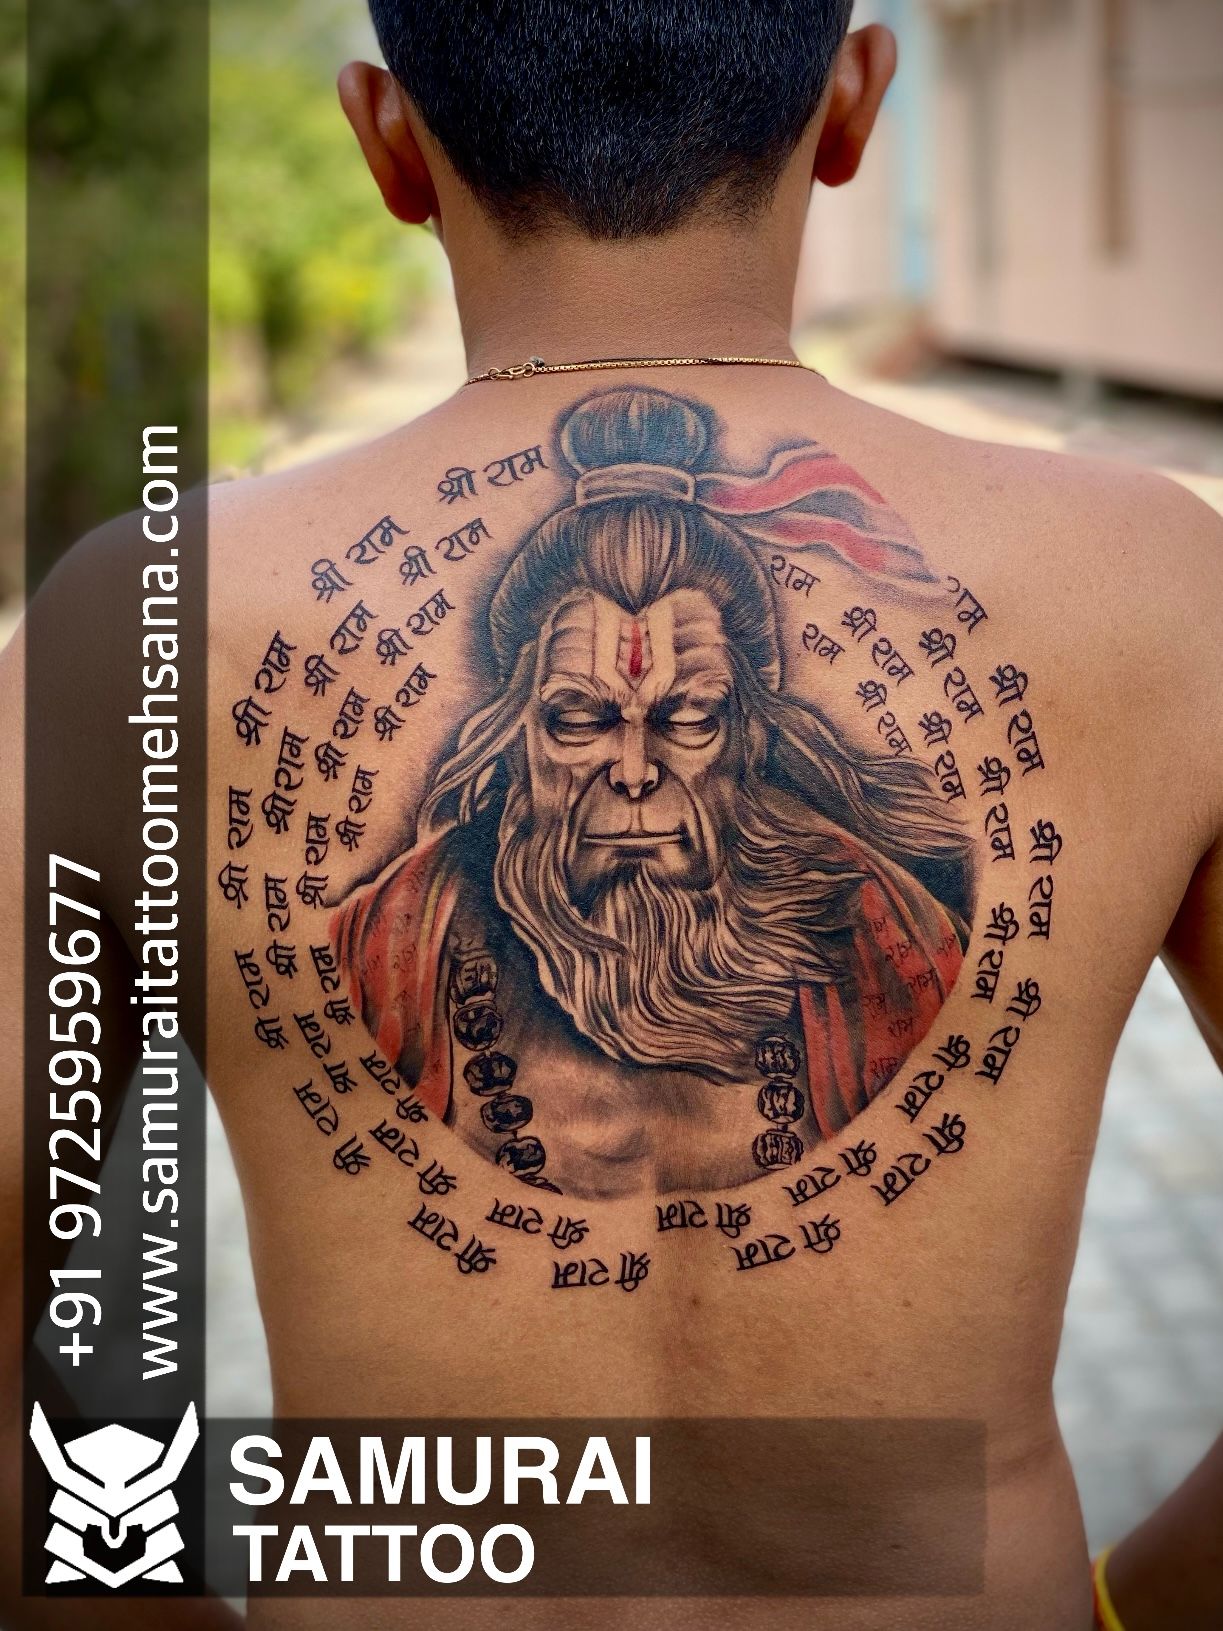 Mokshat's Art motion Tattoos - Jai Bajrangbali | Facebook